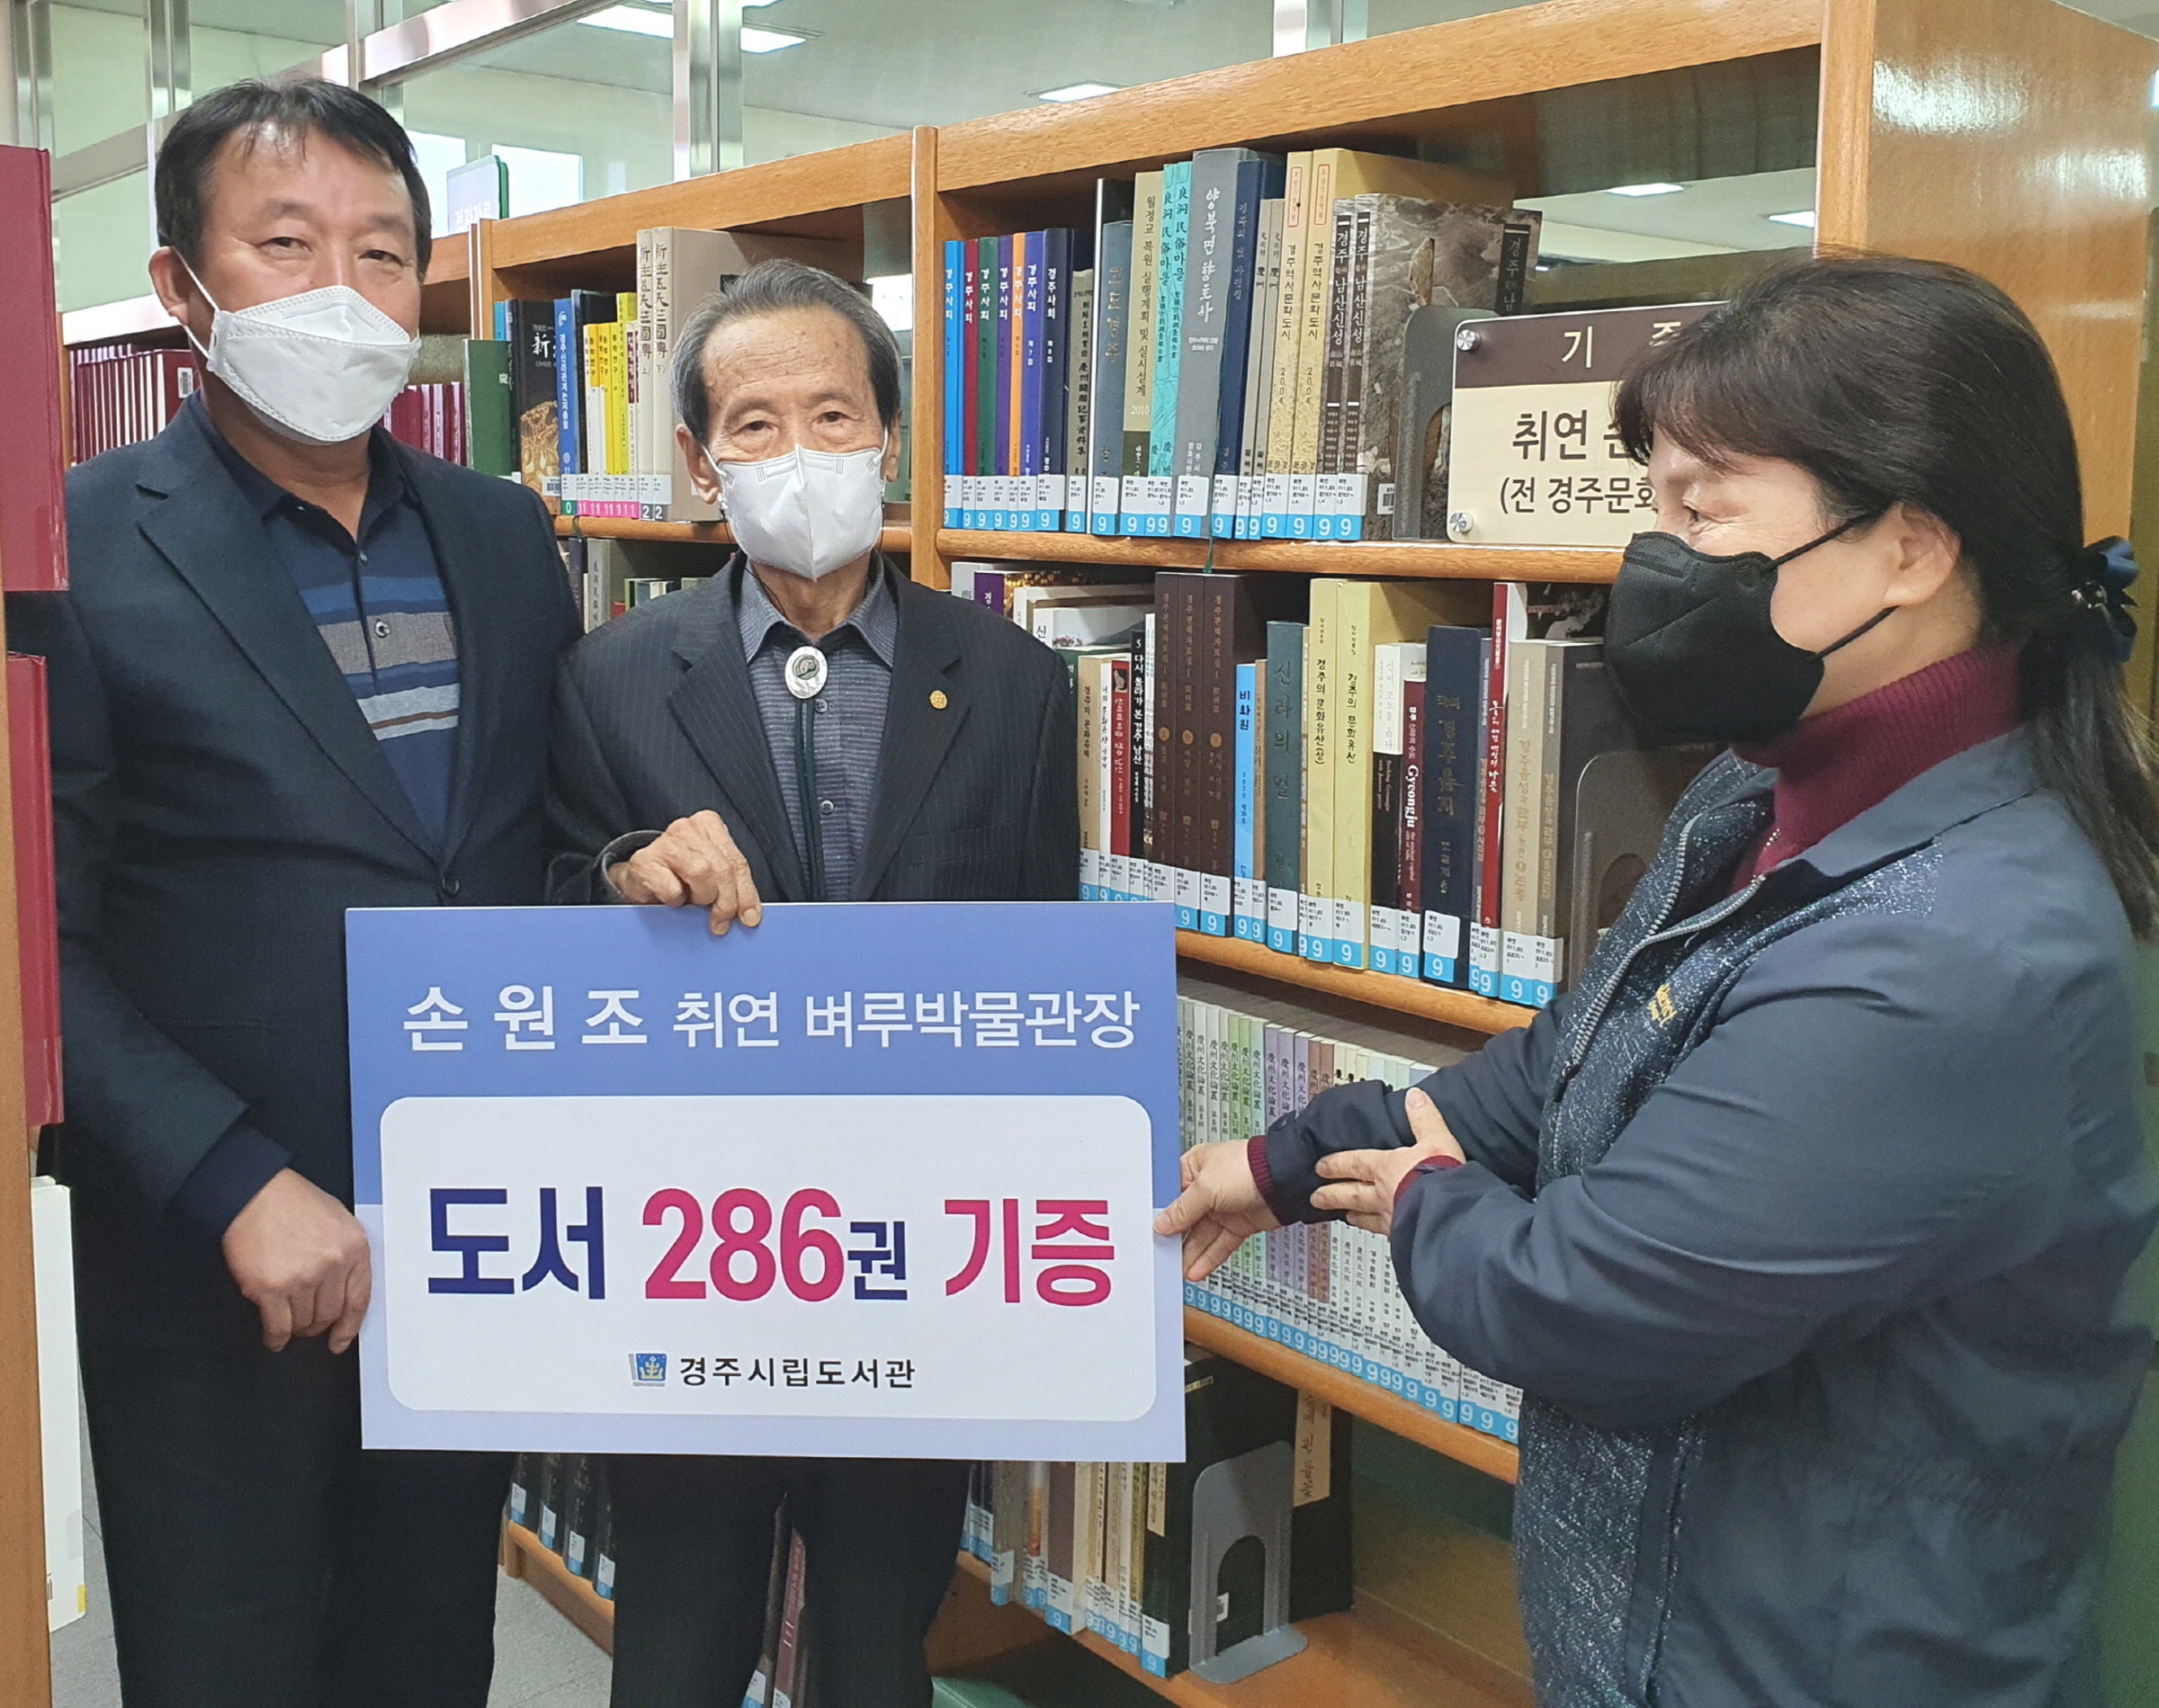 경주시립도서관, 손원조 취연벼루박물관장 경주 관련 도서 기증식 개최